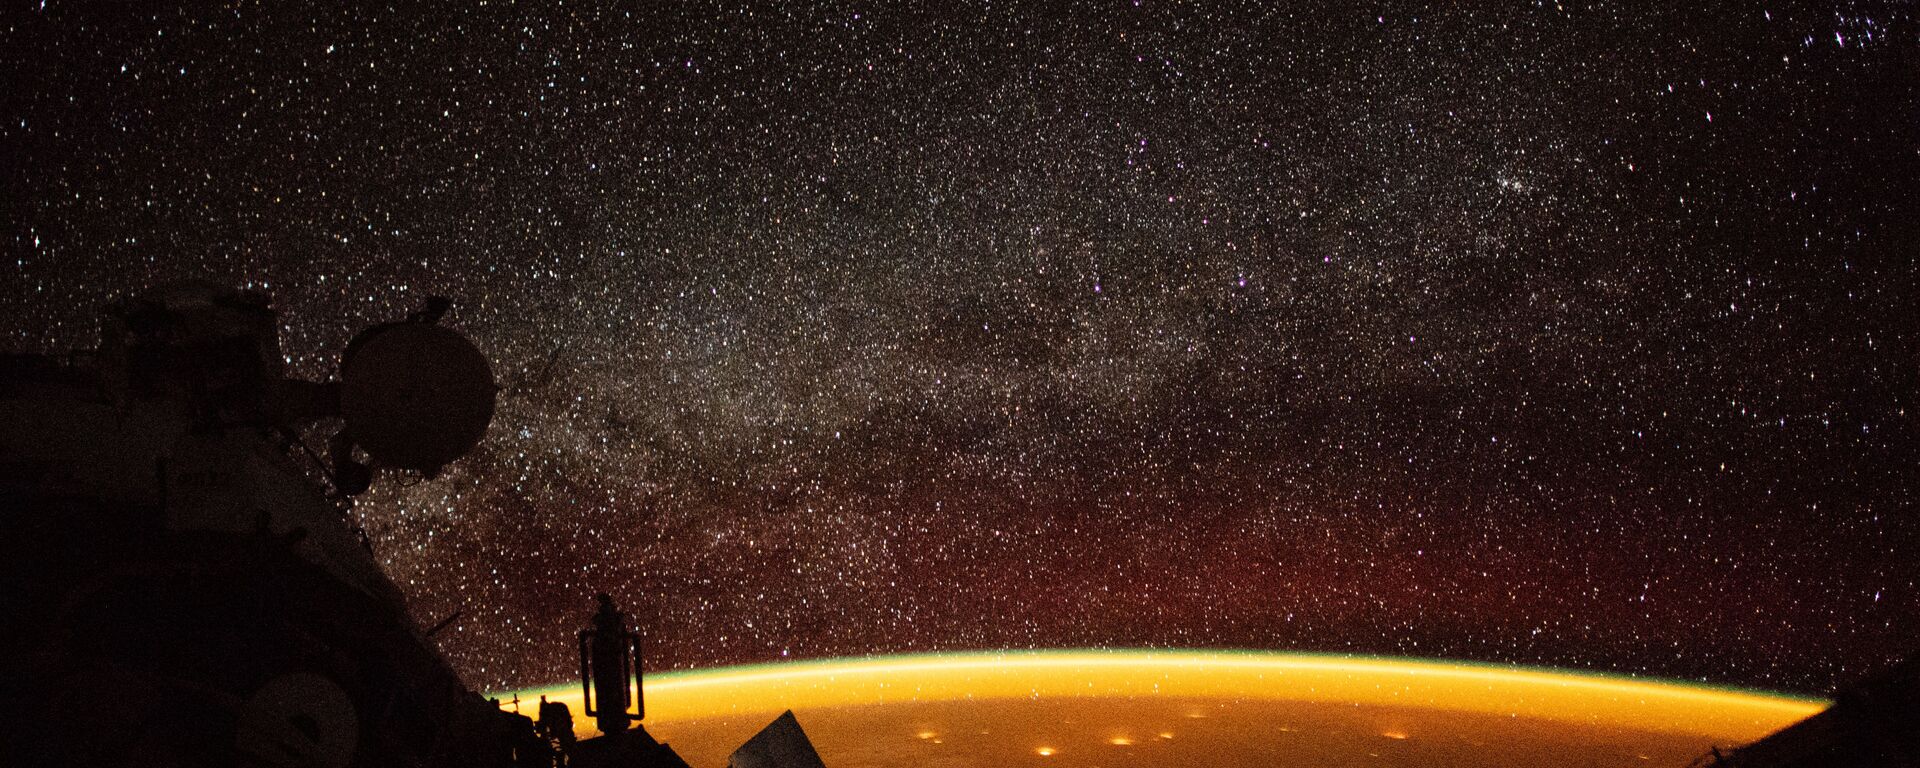 Собственное свечение атмосферы Земли, снятое астронавтом с борта МКС  - Sputnik Узбекистан, 1920, 16.02.2021